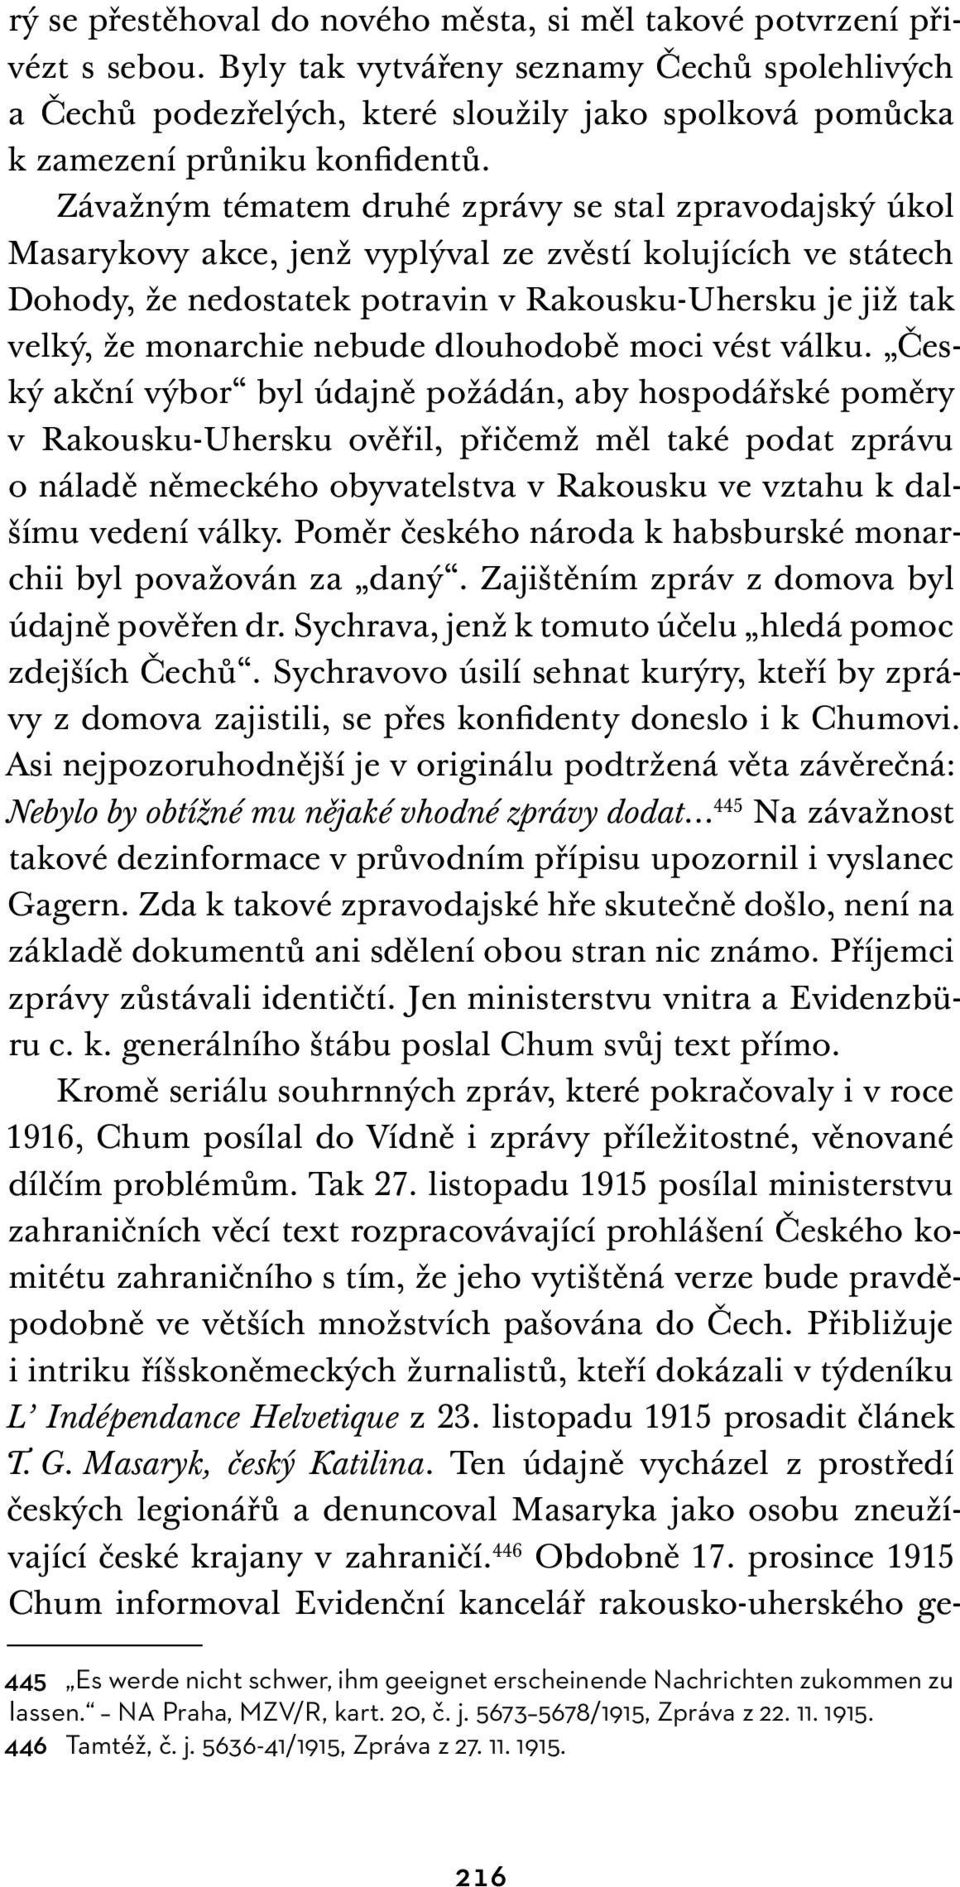 Závažným tématem druhé zprávy se stal zpravodajský úkol Masarykovy akce, jenž vyplýval ze zvěstí kolujících ve státech Dohody, že nedostatek potravin v Rakousku-Uhersku je již tak velký, že monarchie